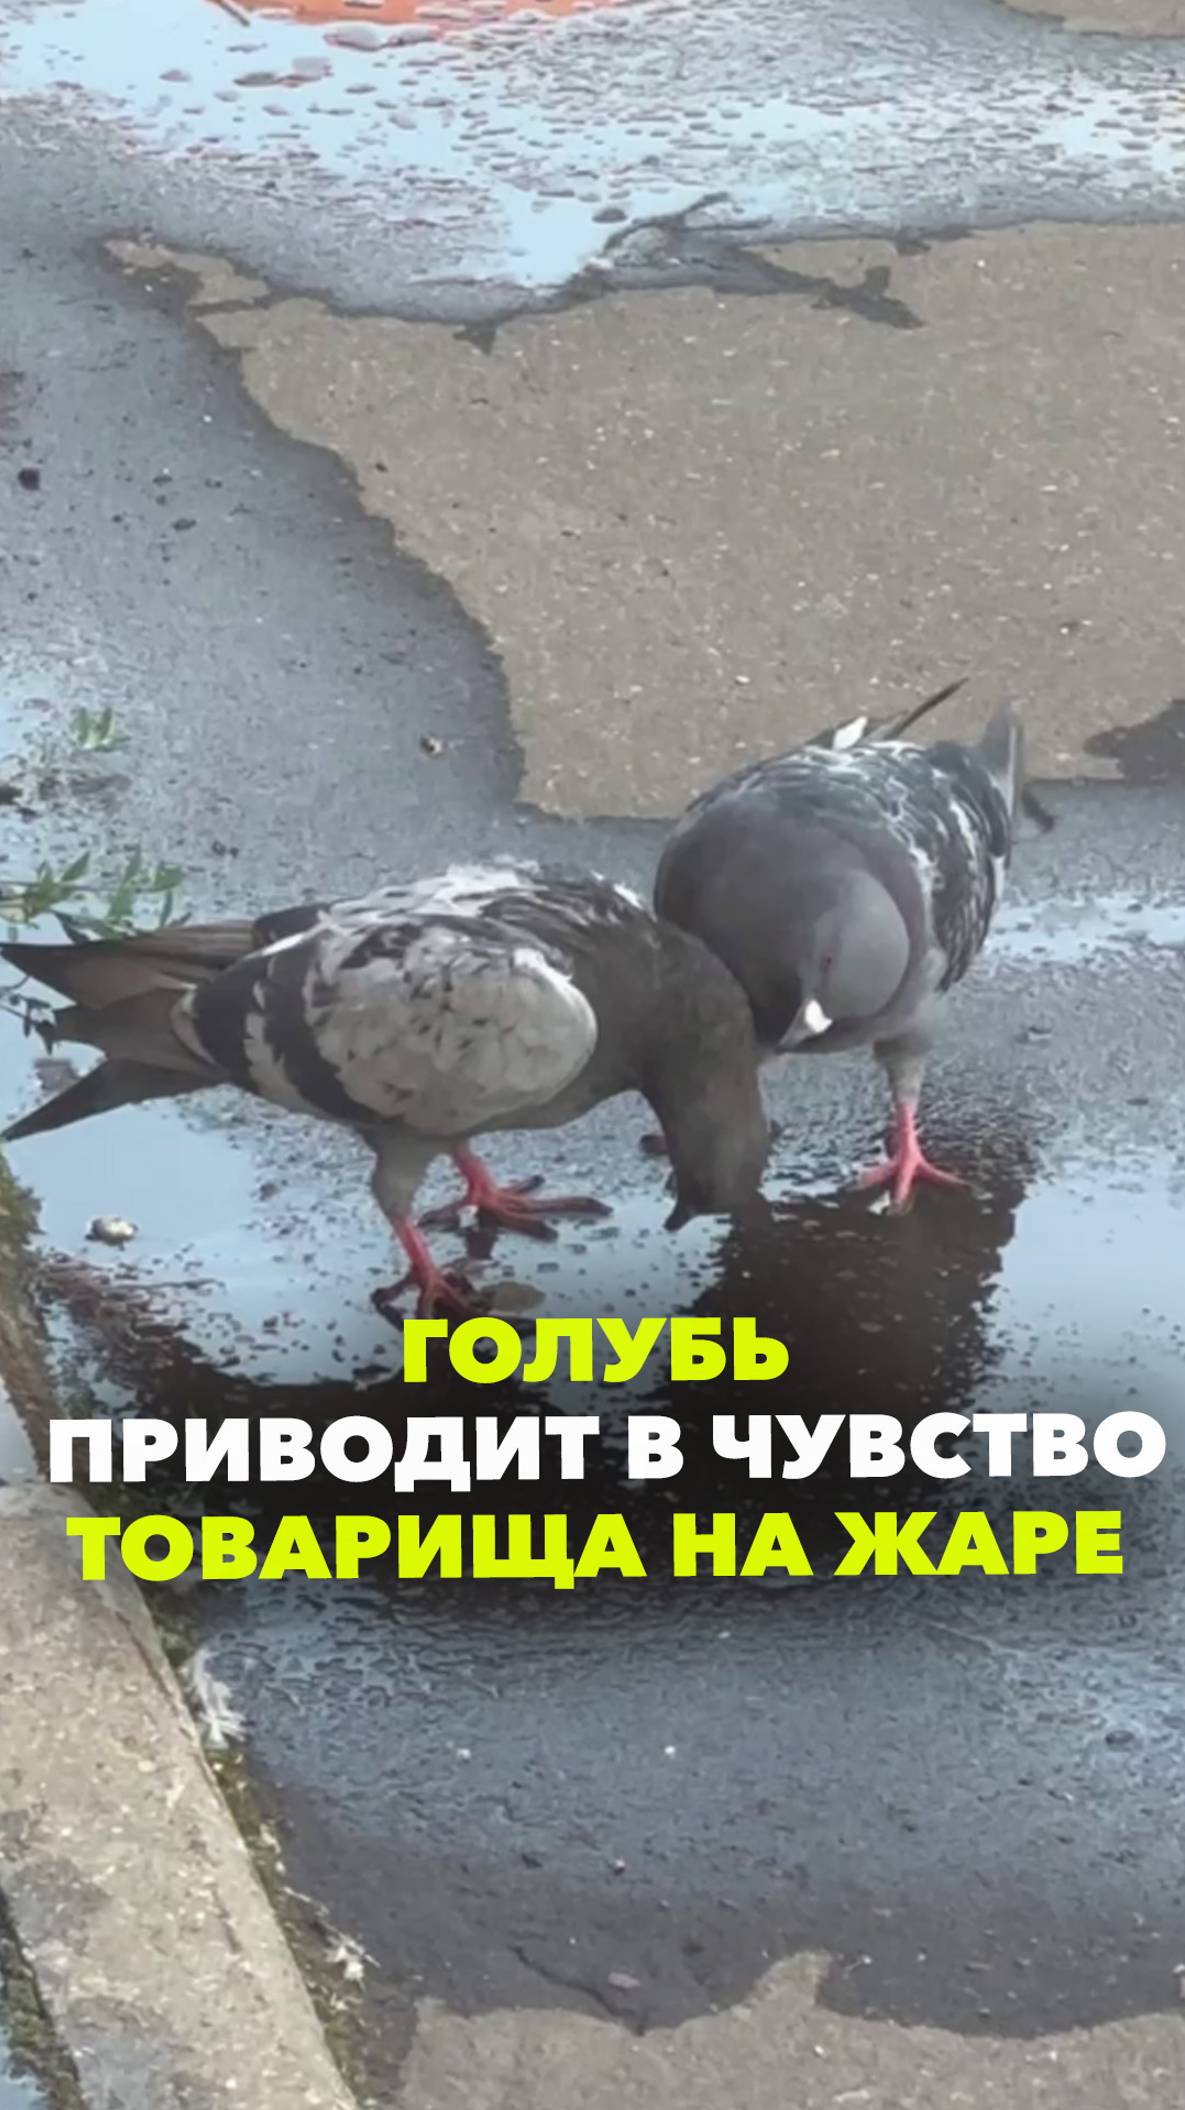 Дружеская взаимовыручка: голубь пытается спасти товарища от жары. Снято у метро Тимирязевская